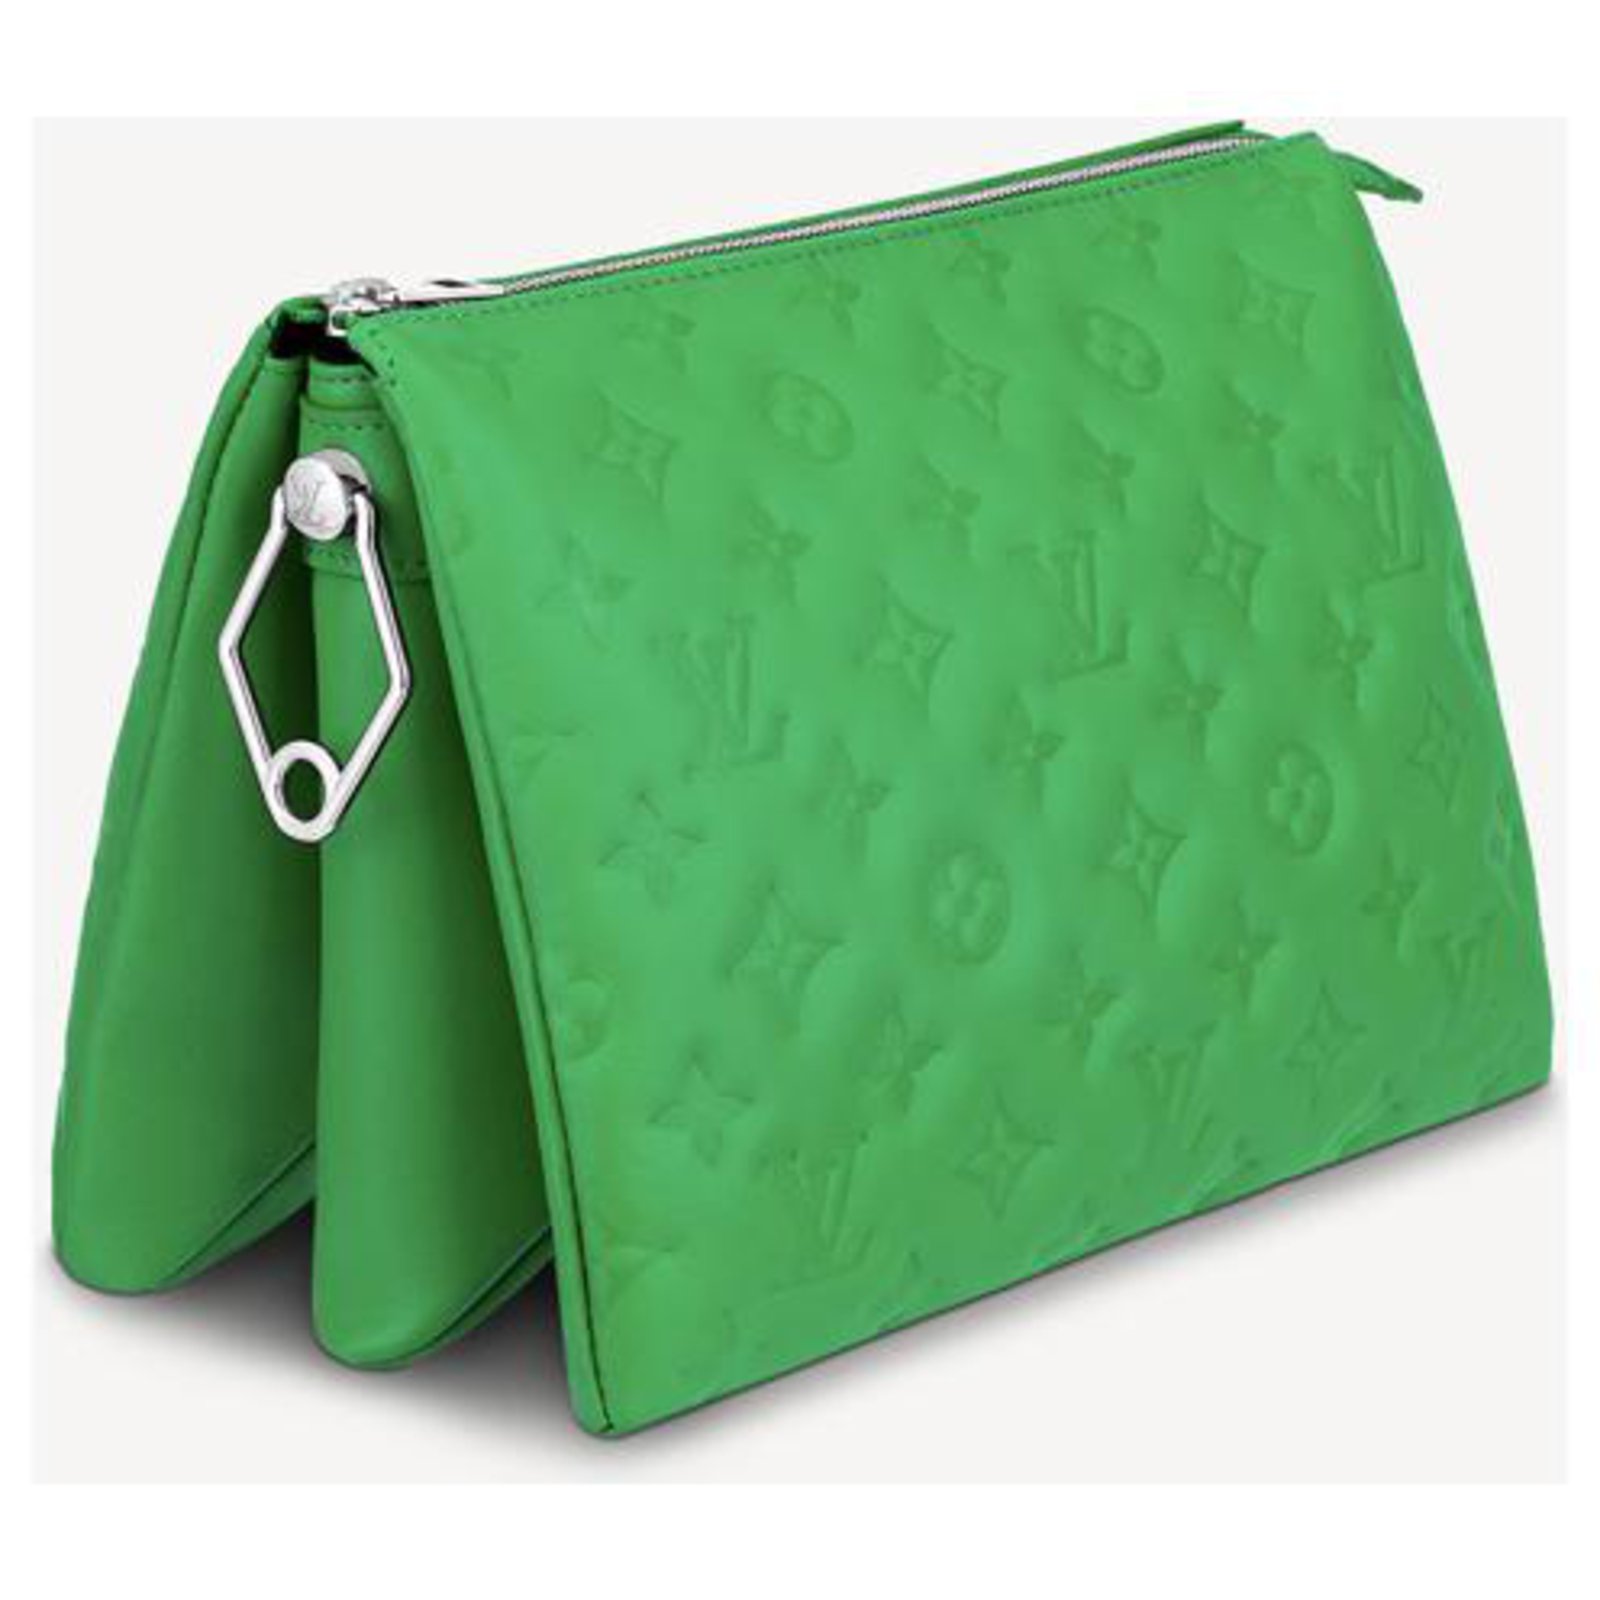 Objet du désir : le nouveau sac à main Coussin de Louis Vuitton 